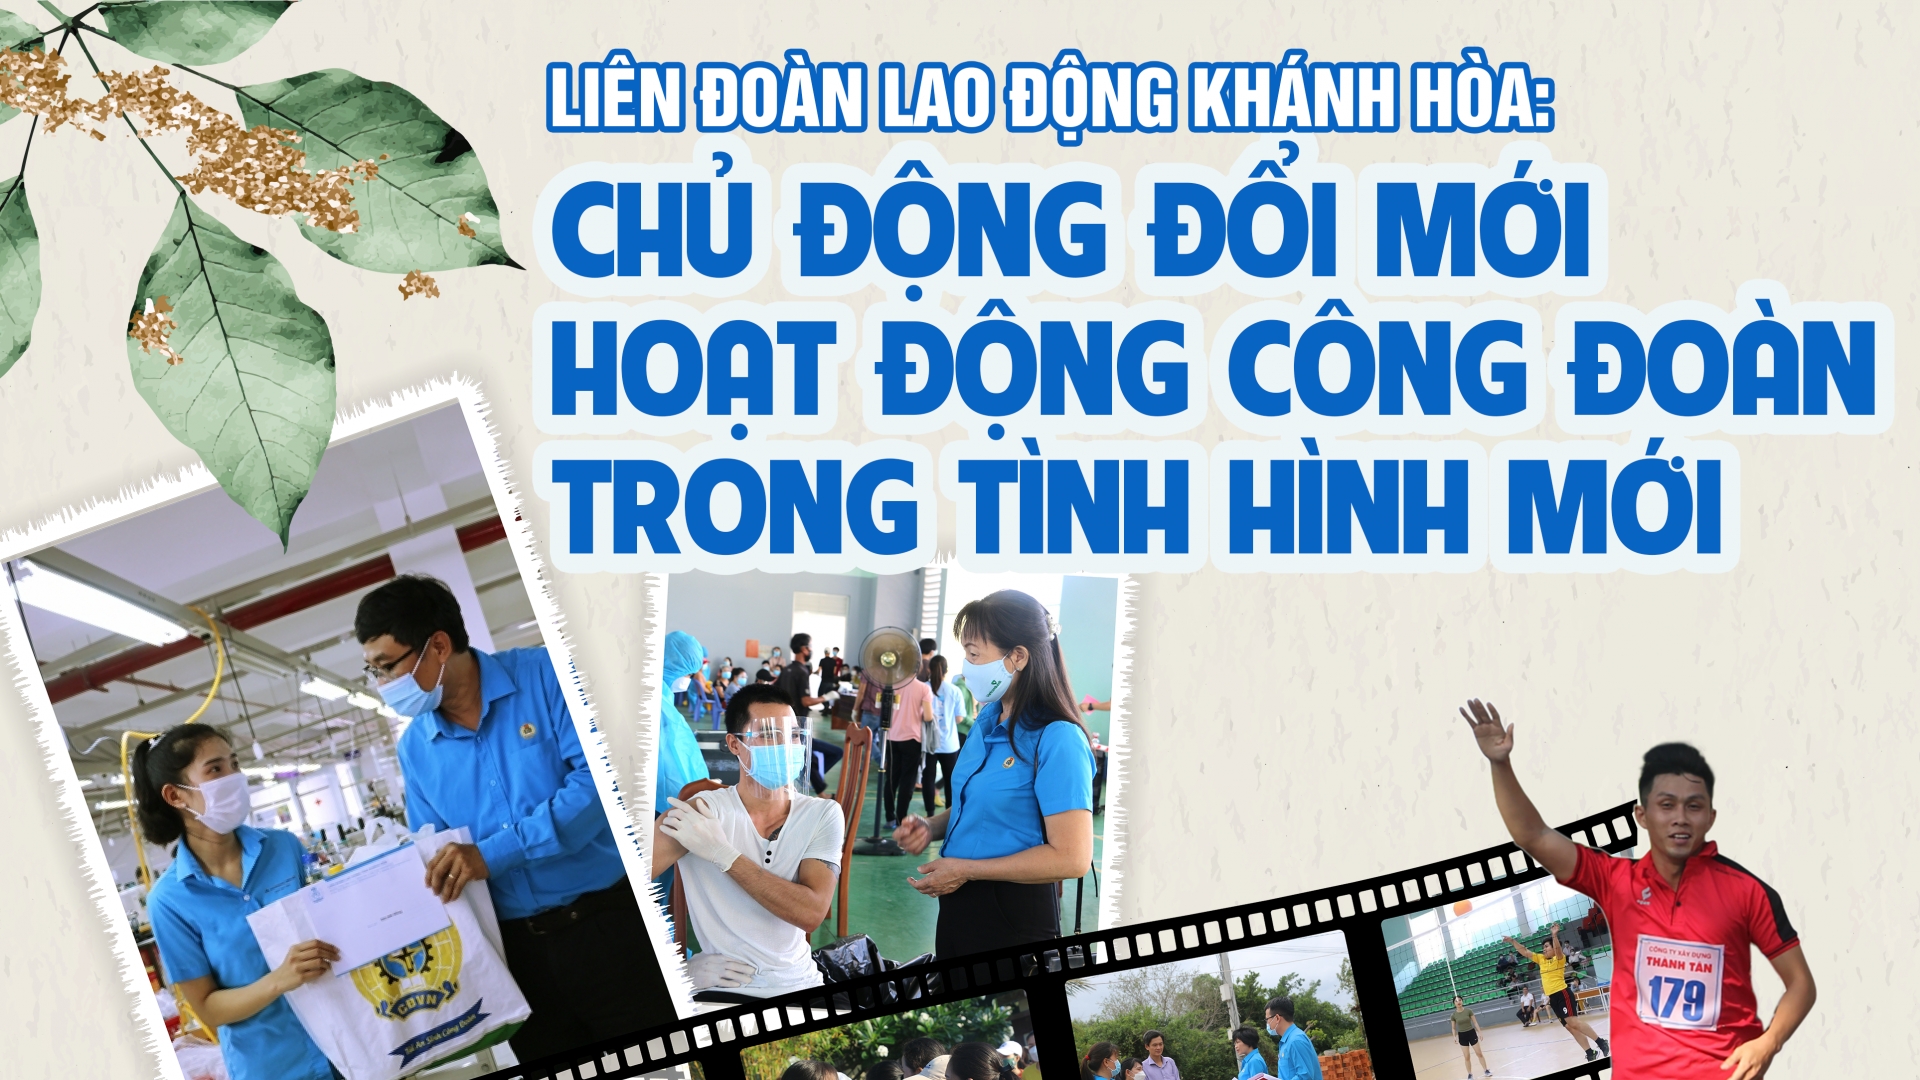 LĐLĐ Khánh Hòa: Chủ động đổi mới hoạt công đoàn trong tình hình mới